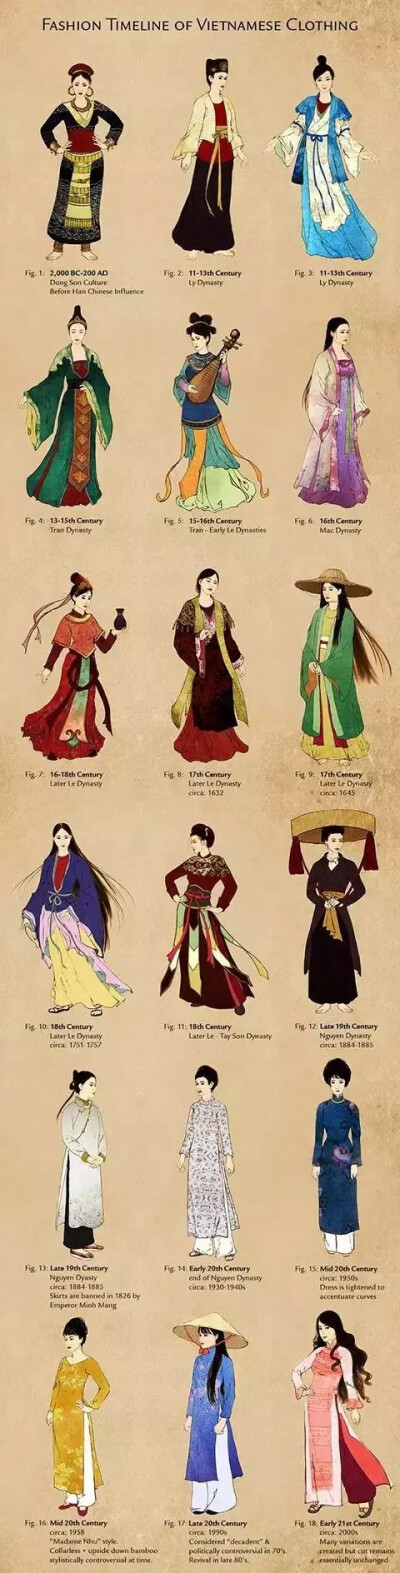 奥黛（Ao Dai），类似于中国旗袍的越南的传统服装。越南官方也认为奥黛源自中国旗袍。奥黛是中文对越语Ao Dai的音译。“Ao”源于汉语“袄”，而Dai的意思是“长”。但是在越南党政的官方中文版网站里，始终用“旗袍…